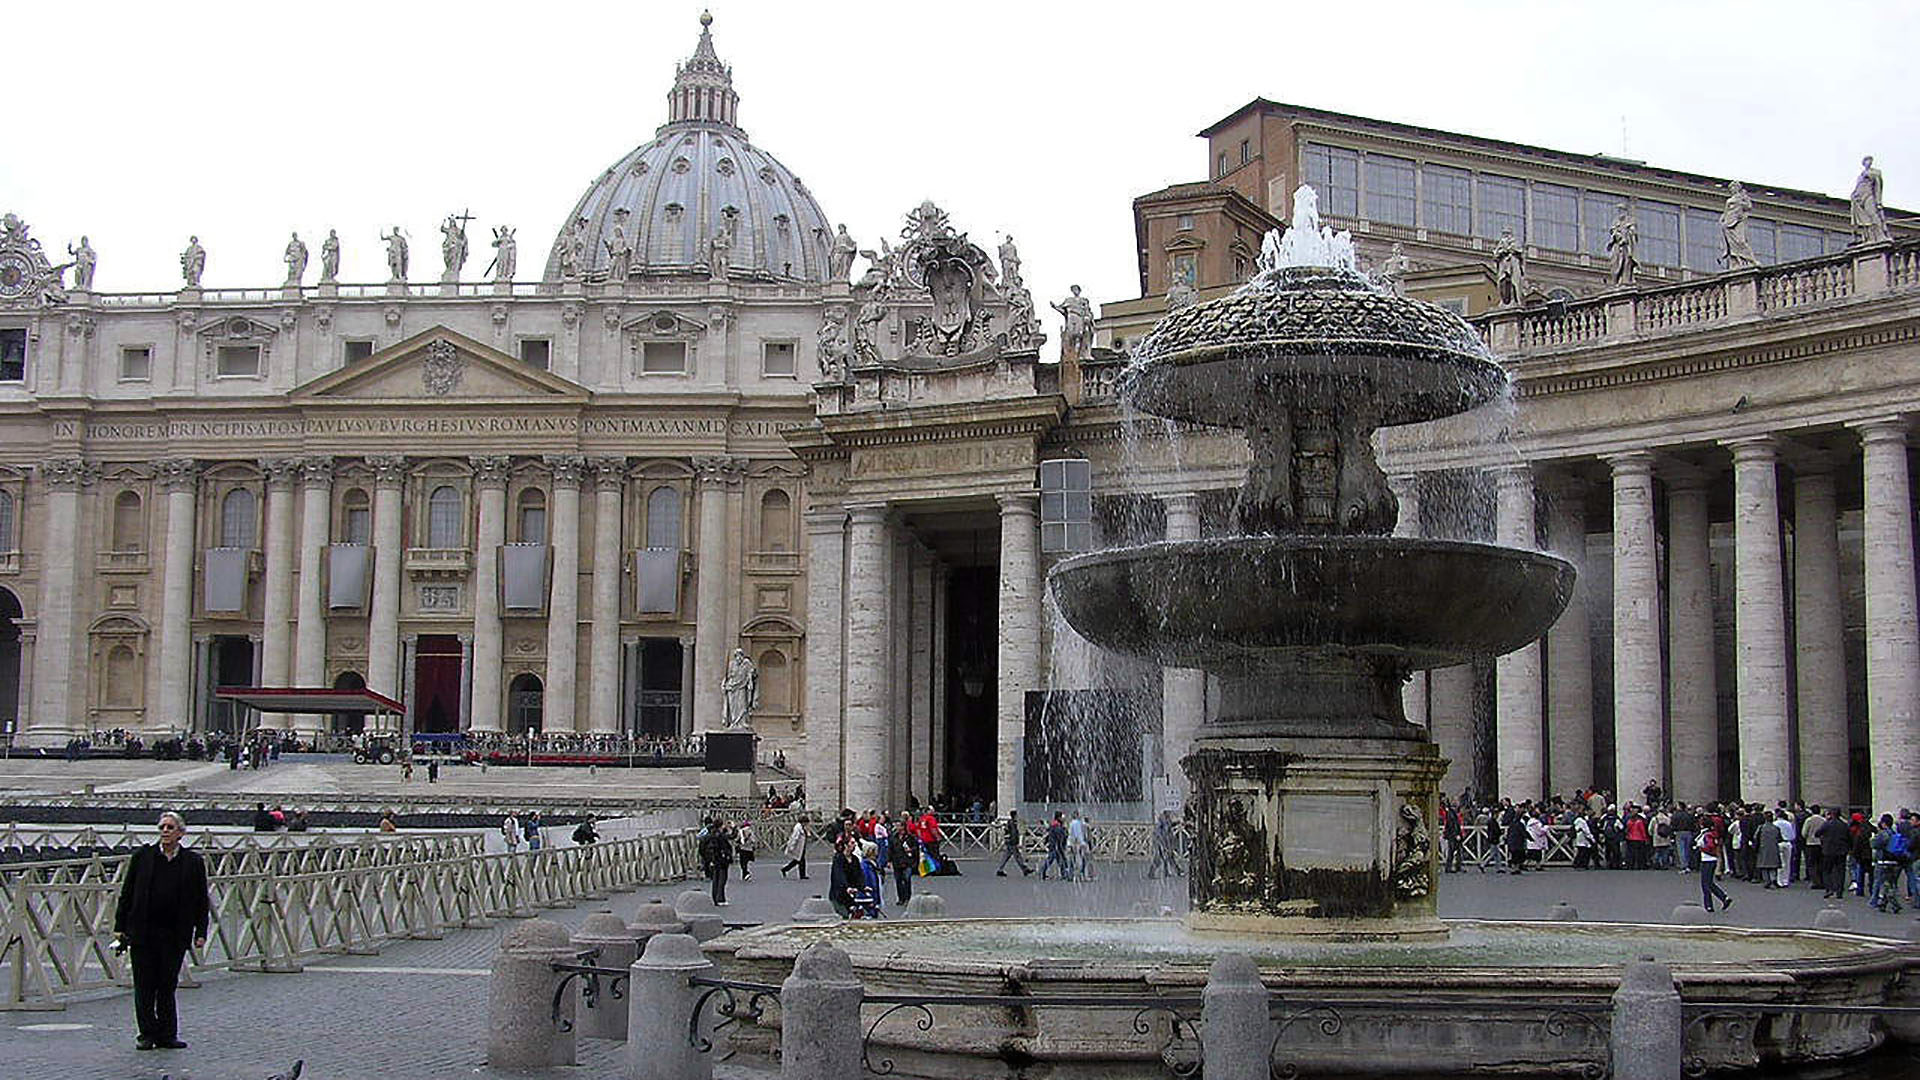 En raison de la sécheresse qui sévit en Italie, les deux fontaines situées place Saint-Pierre vont être fermées. (Photo: www.torange-fr.com)